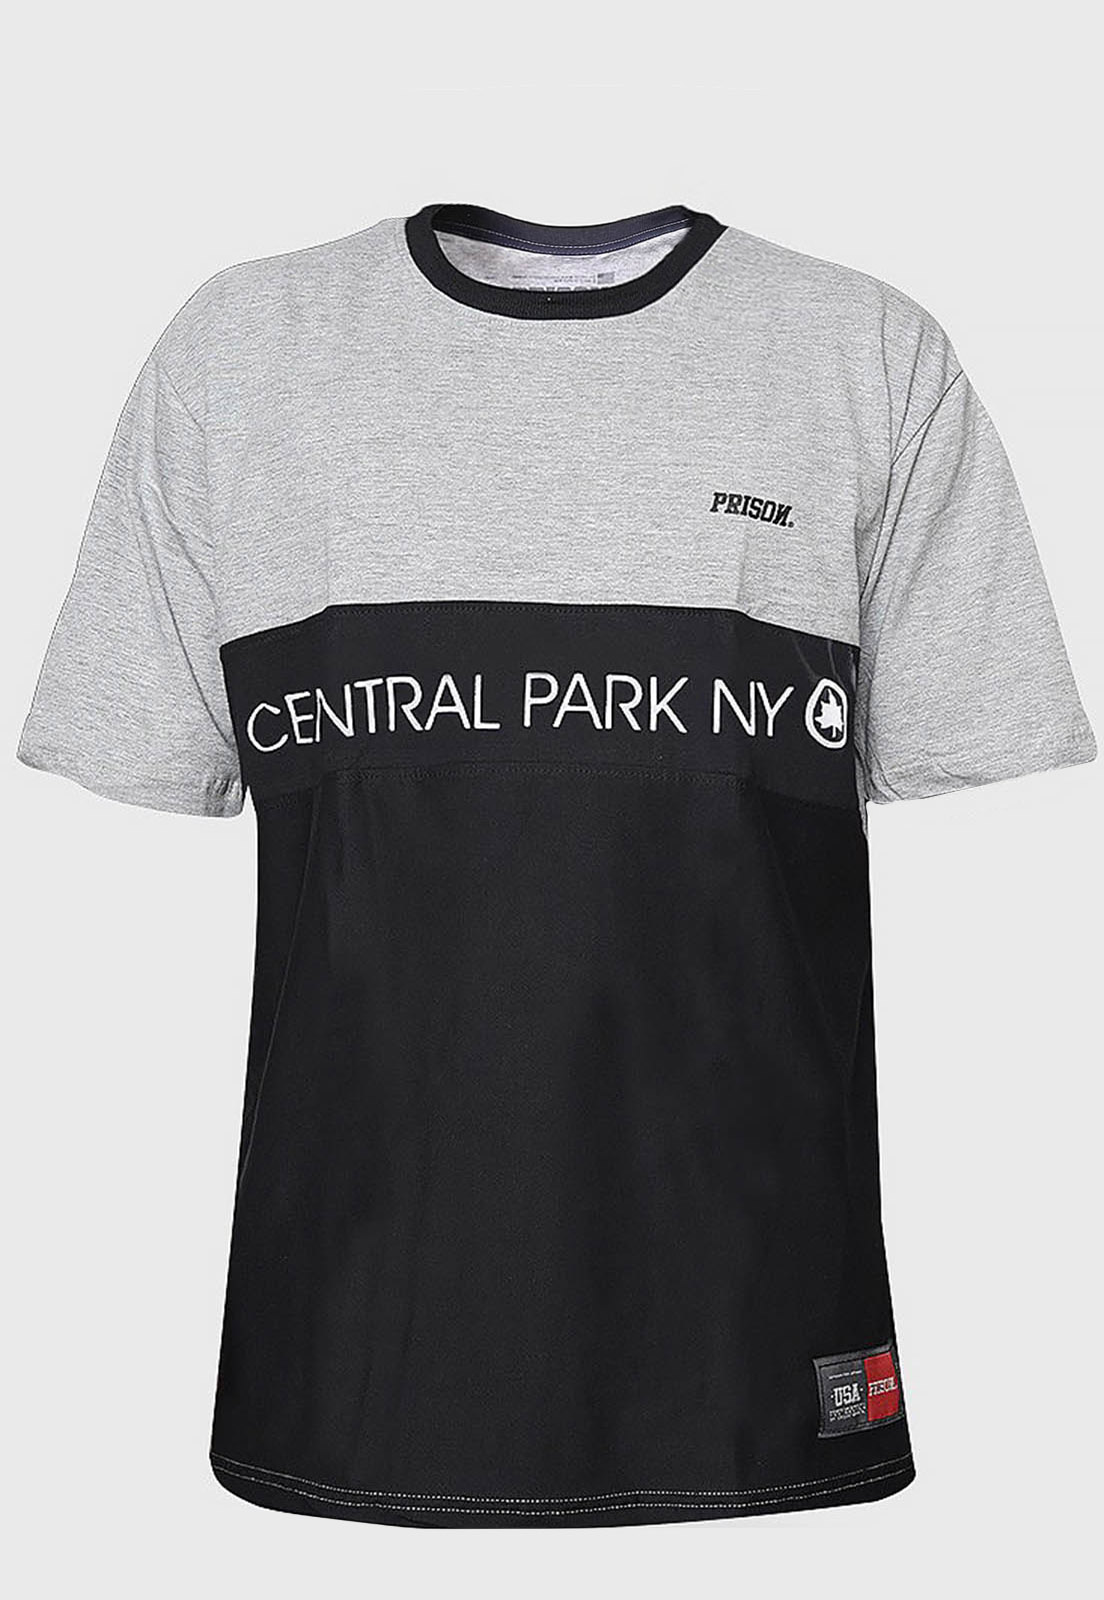 Camiseta Prison Central Park NY